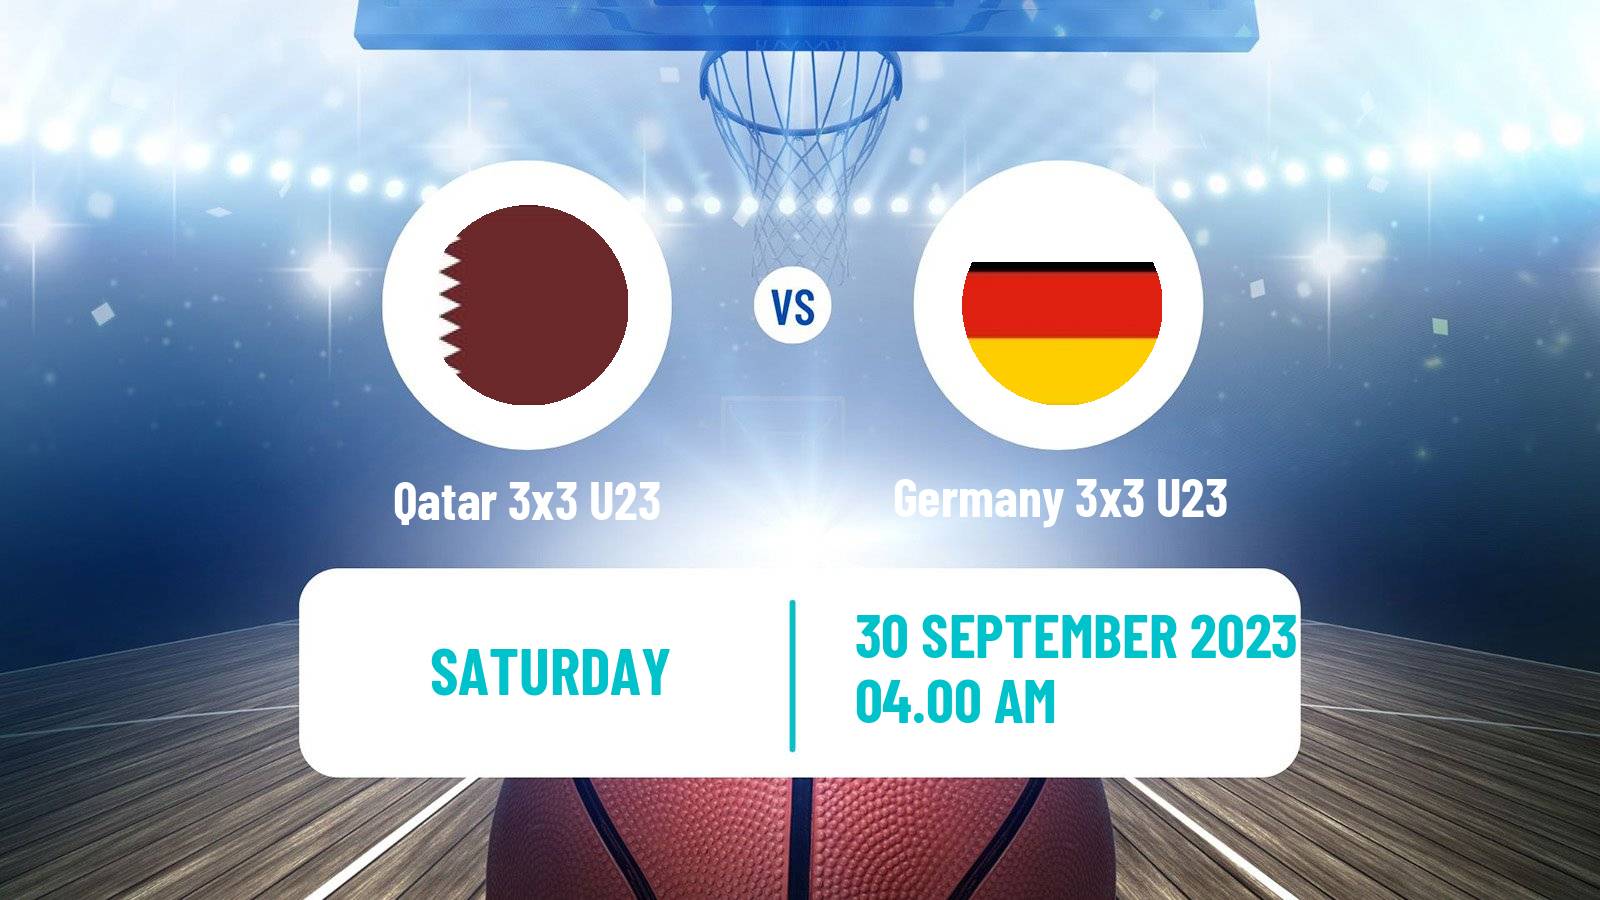 Basketball World Cup Basketball 3x3 U23 Qatar 3x3 U23 - Germany 3x3 U23